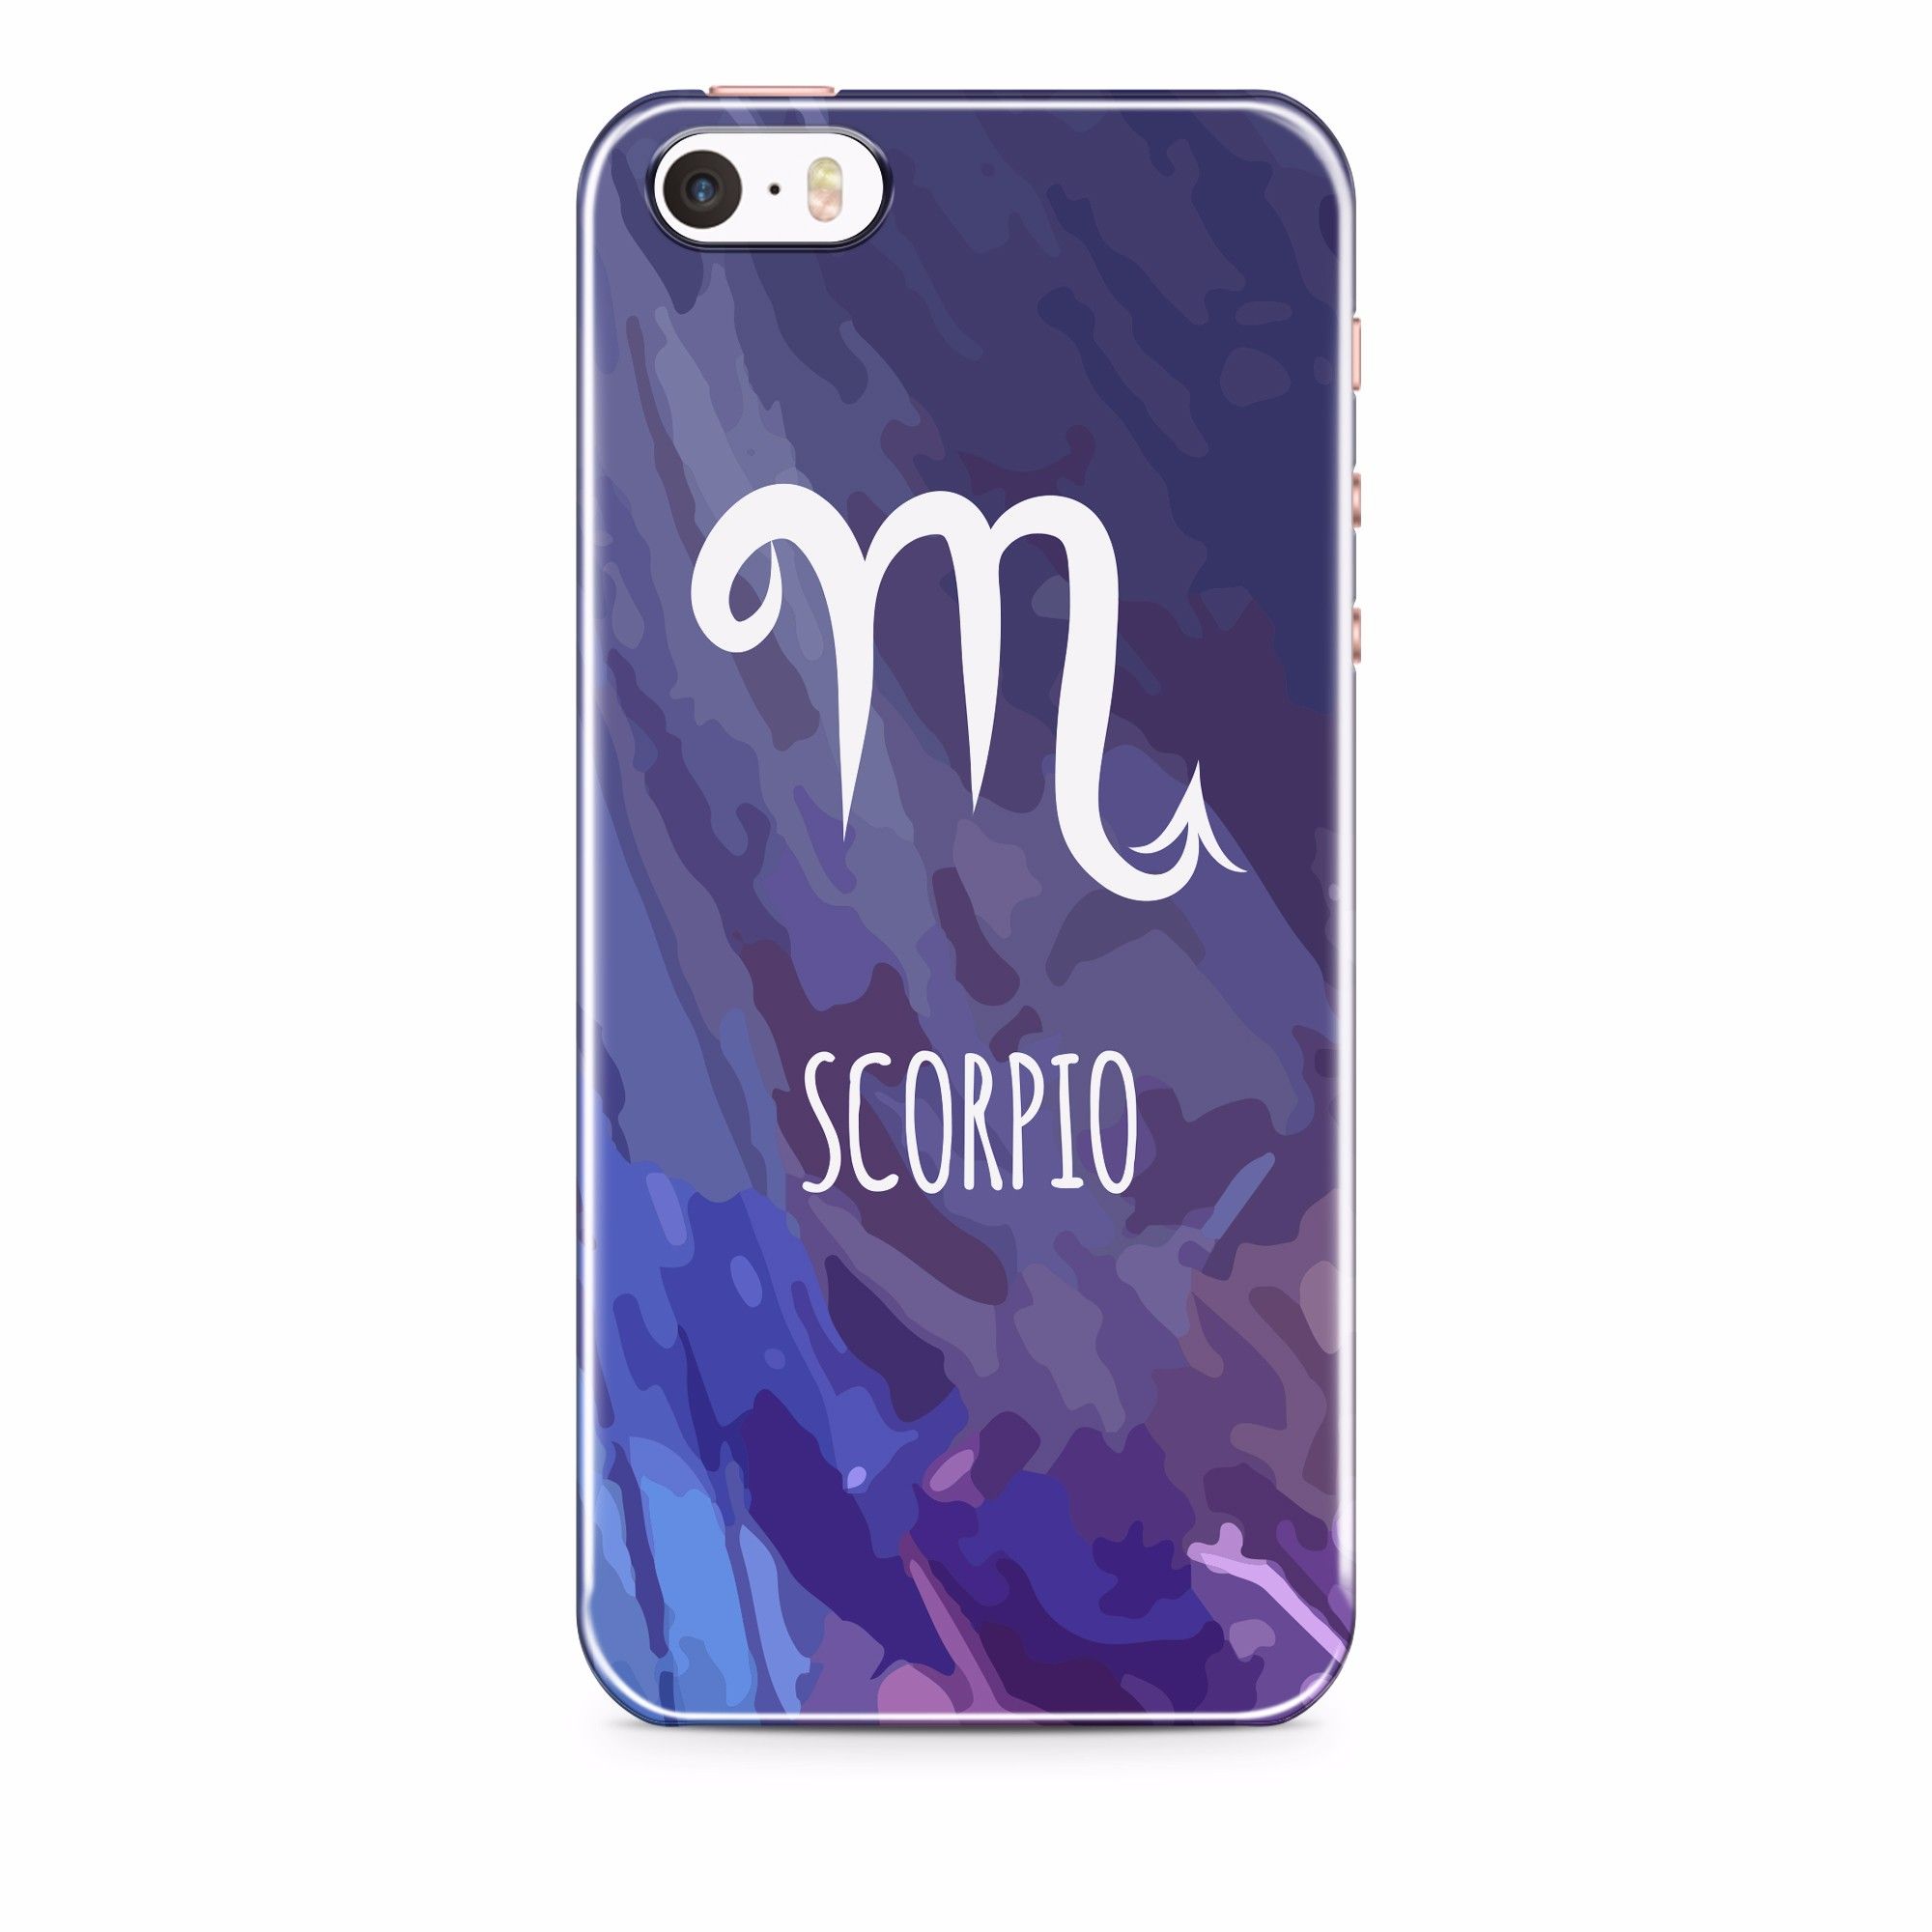  Scorpio - Iphone 5,5s,SE 